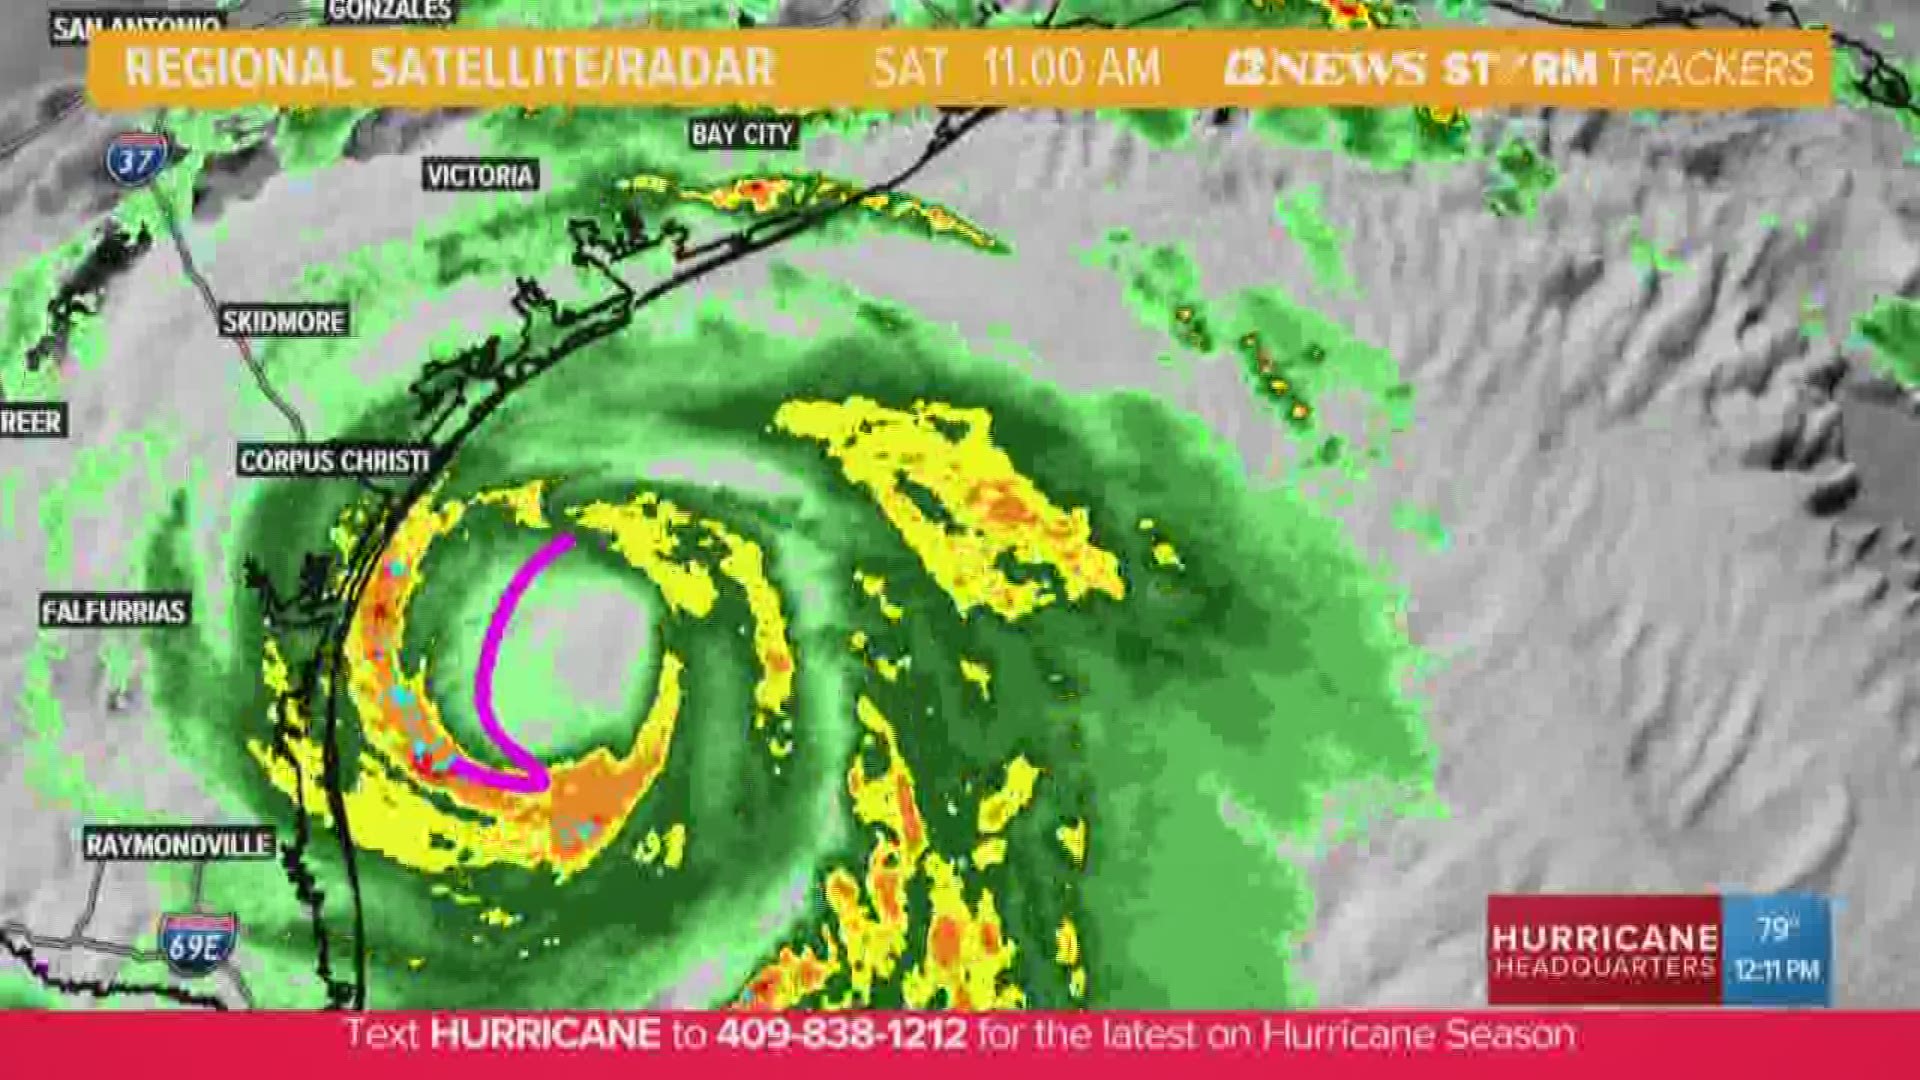 Off-and-on heavy rainfall expected for Southeast Texas as Hurricane Hanna makes landfall near Corpus Christi.